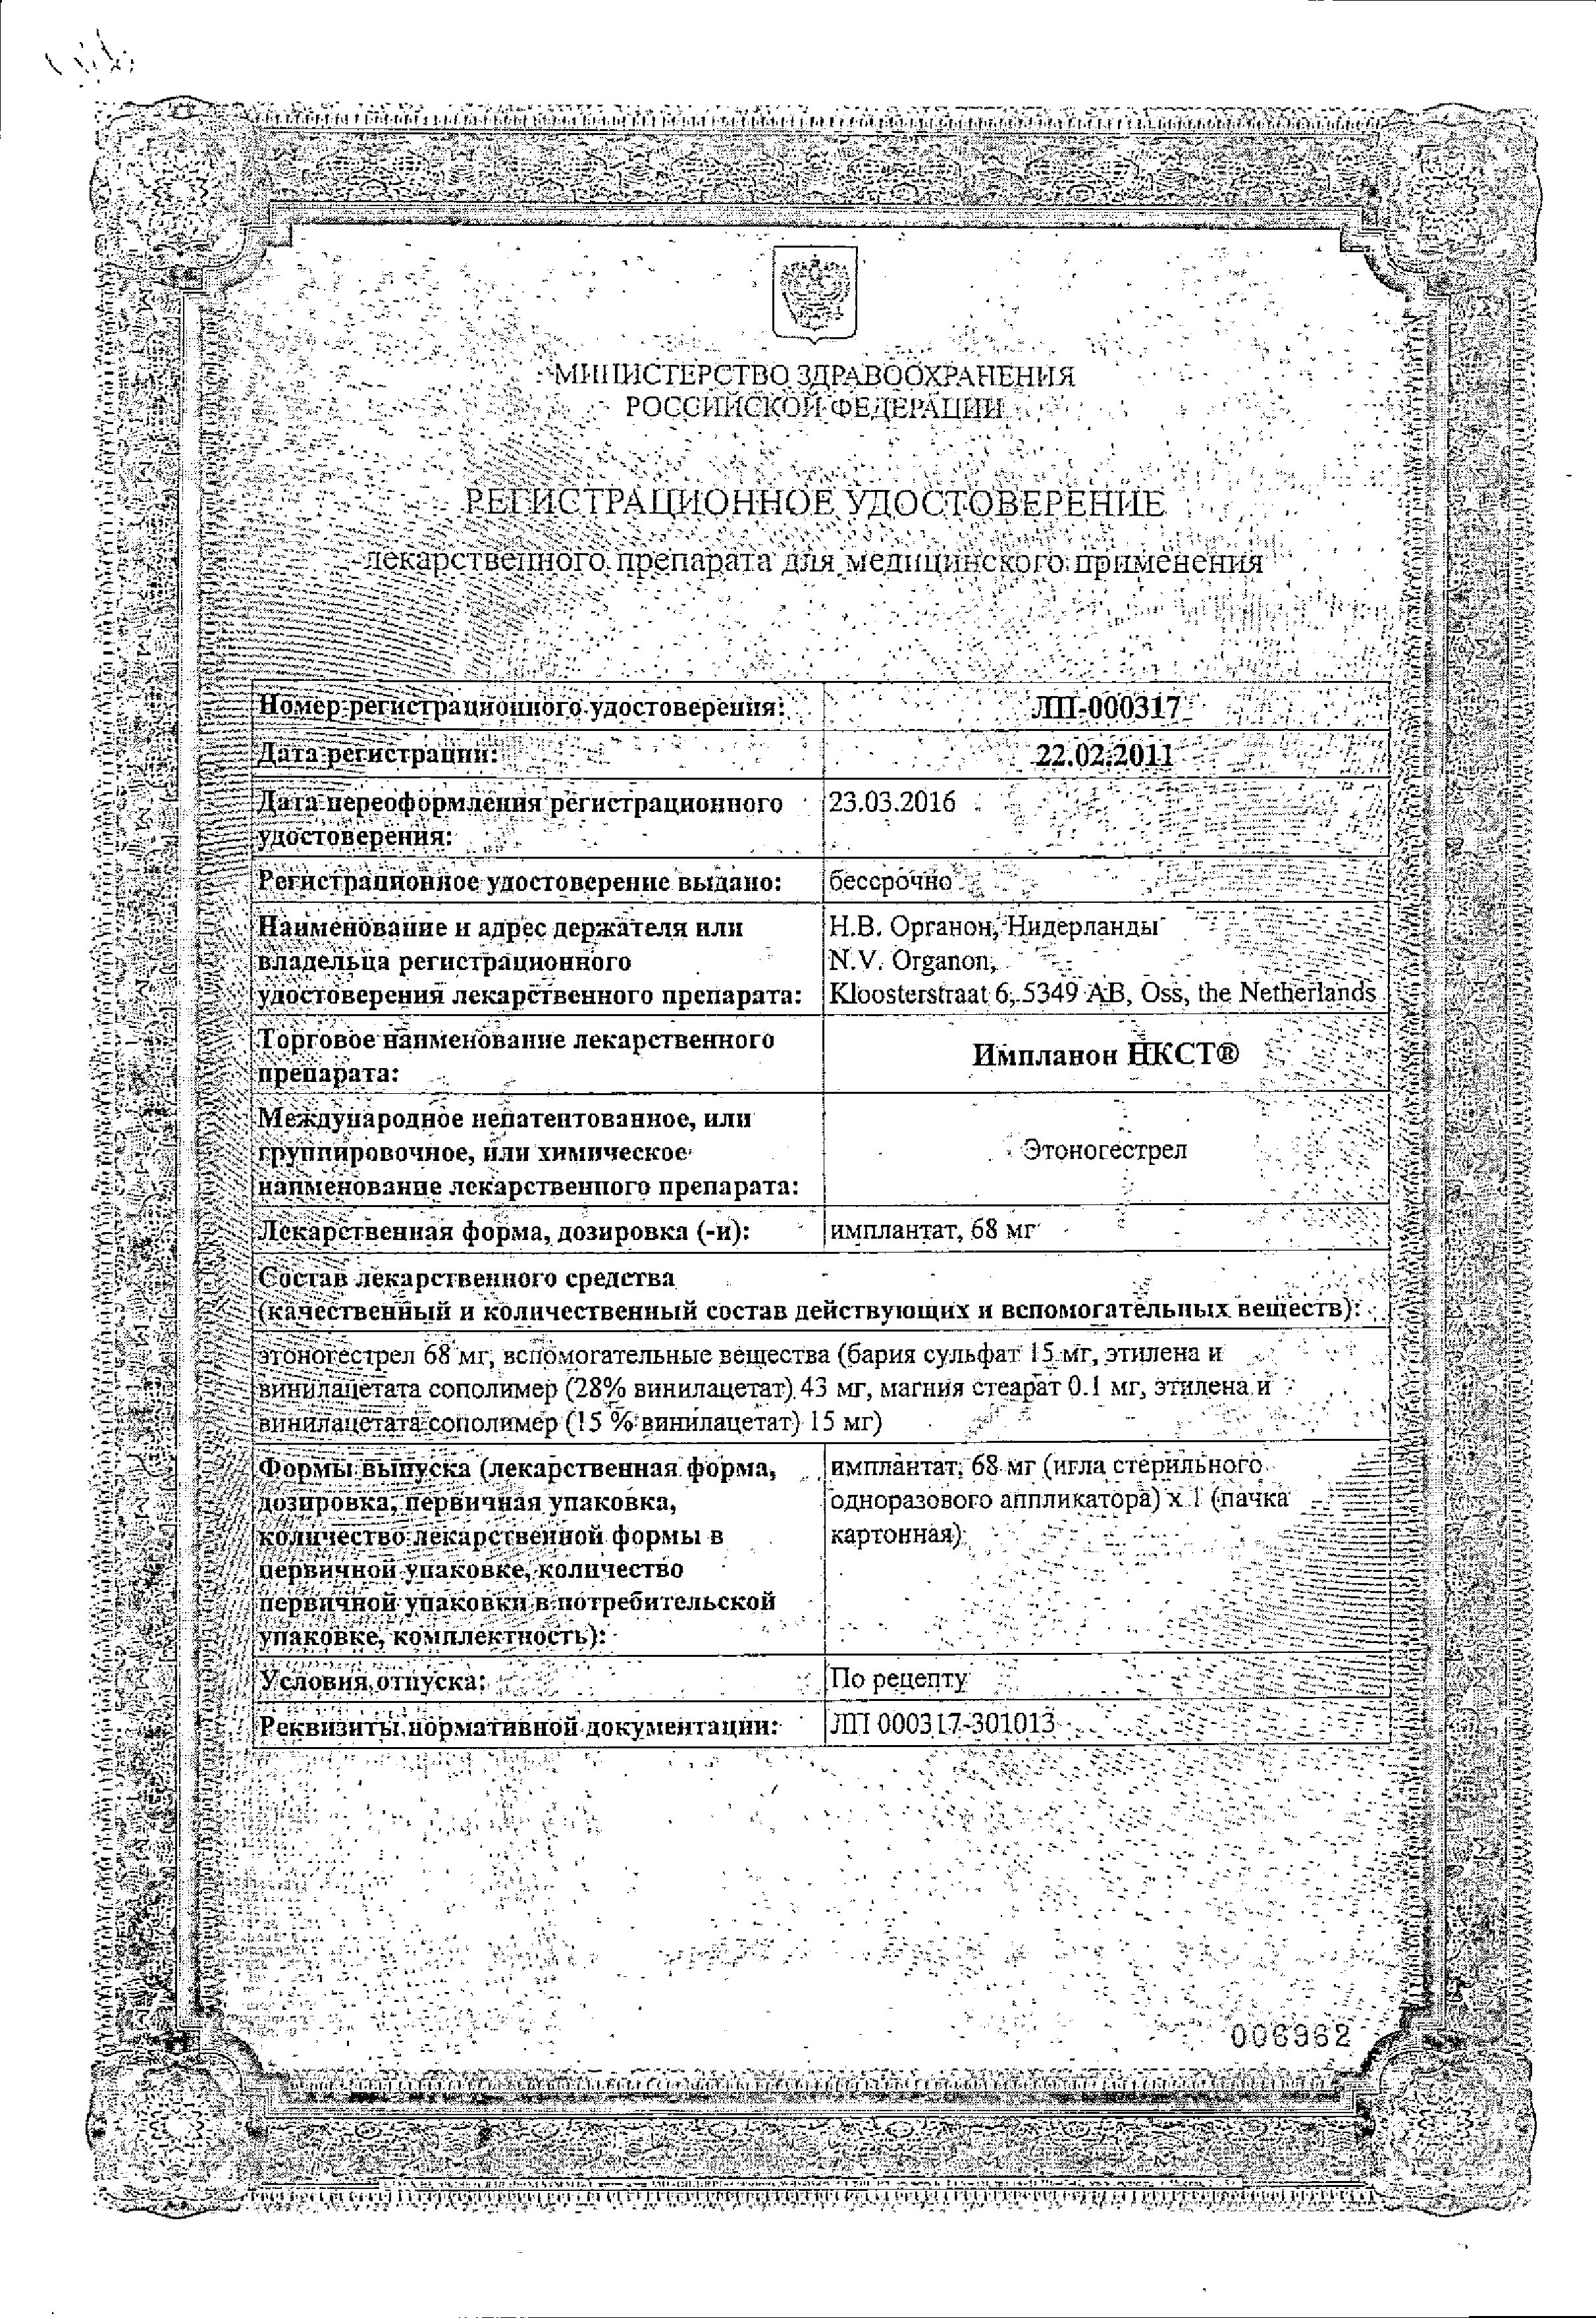 Импланон НКСТ сертификат